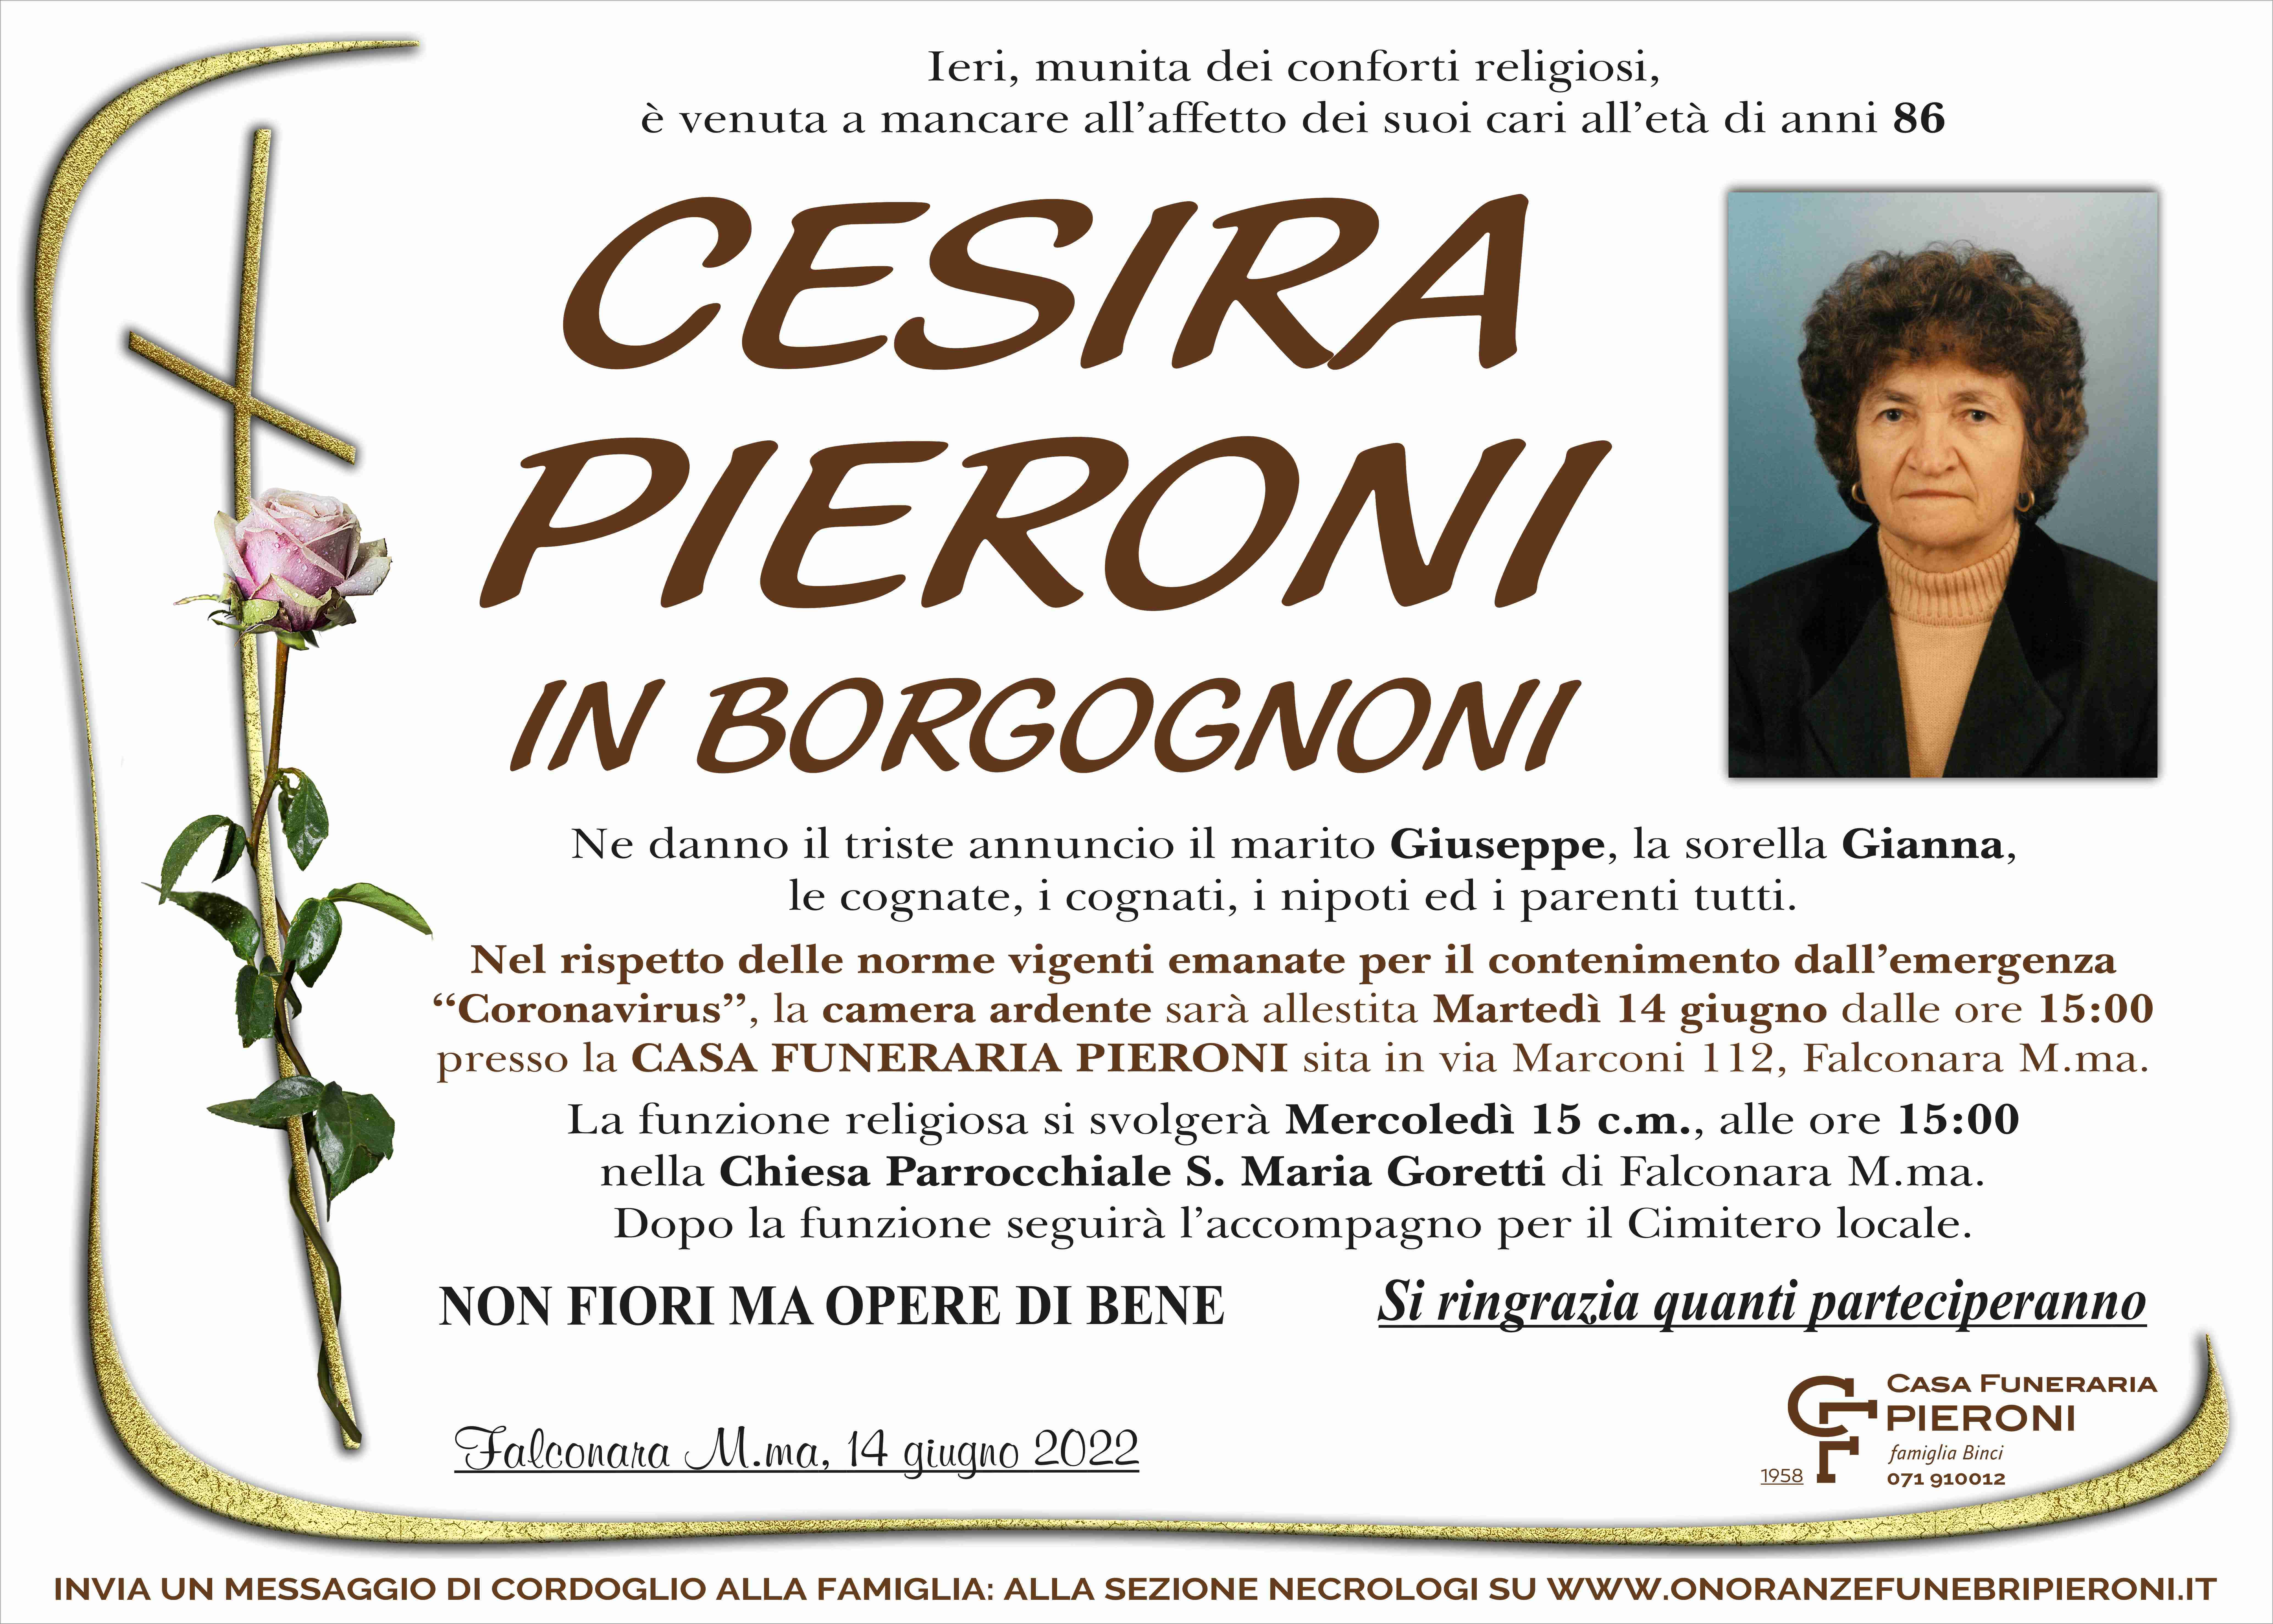 Cesira Pieroni